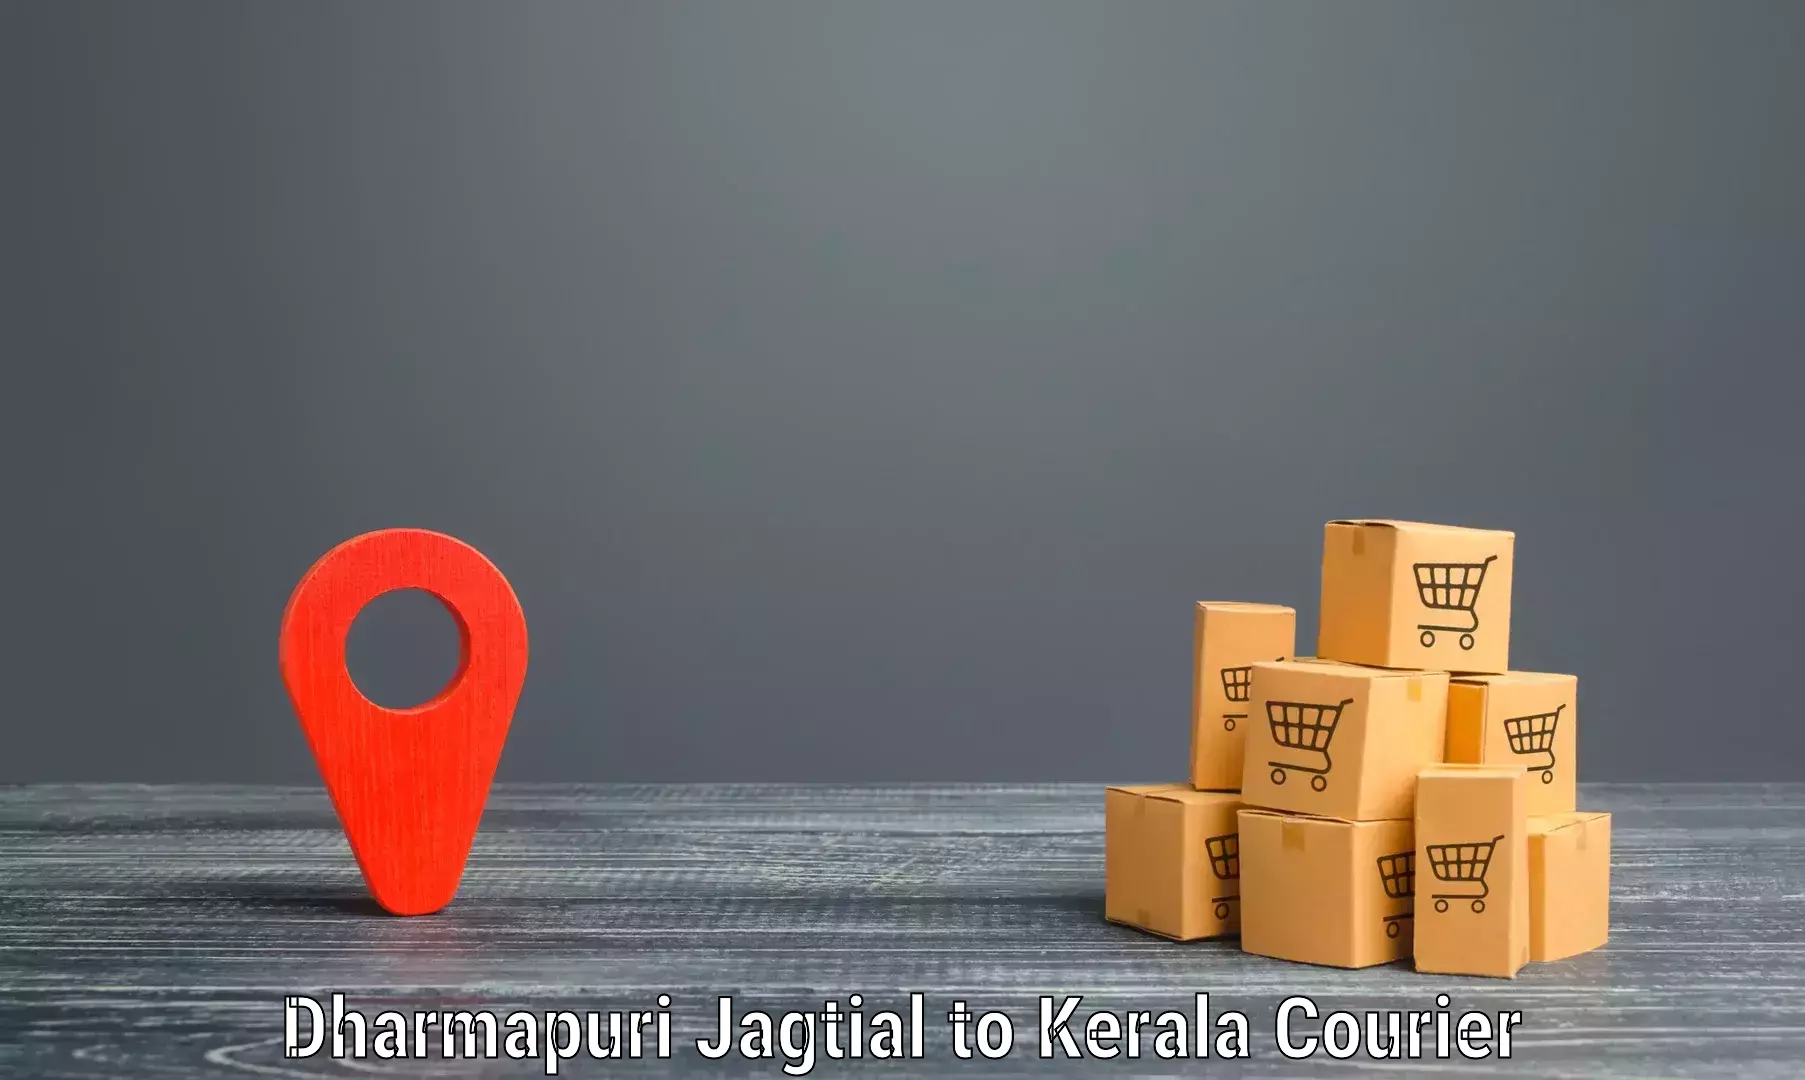 Remote area delivery Dharmapuri Jagtial to IIIT Kottayam